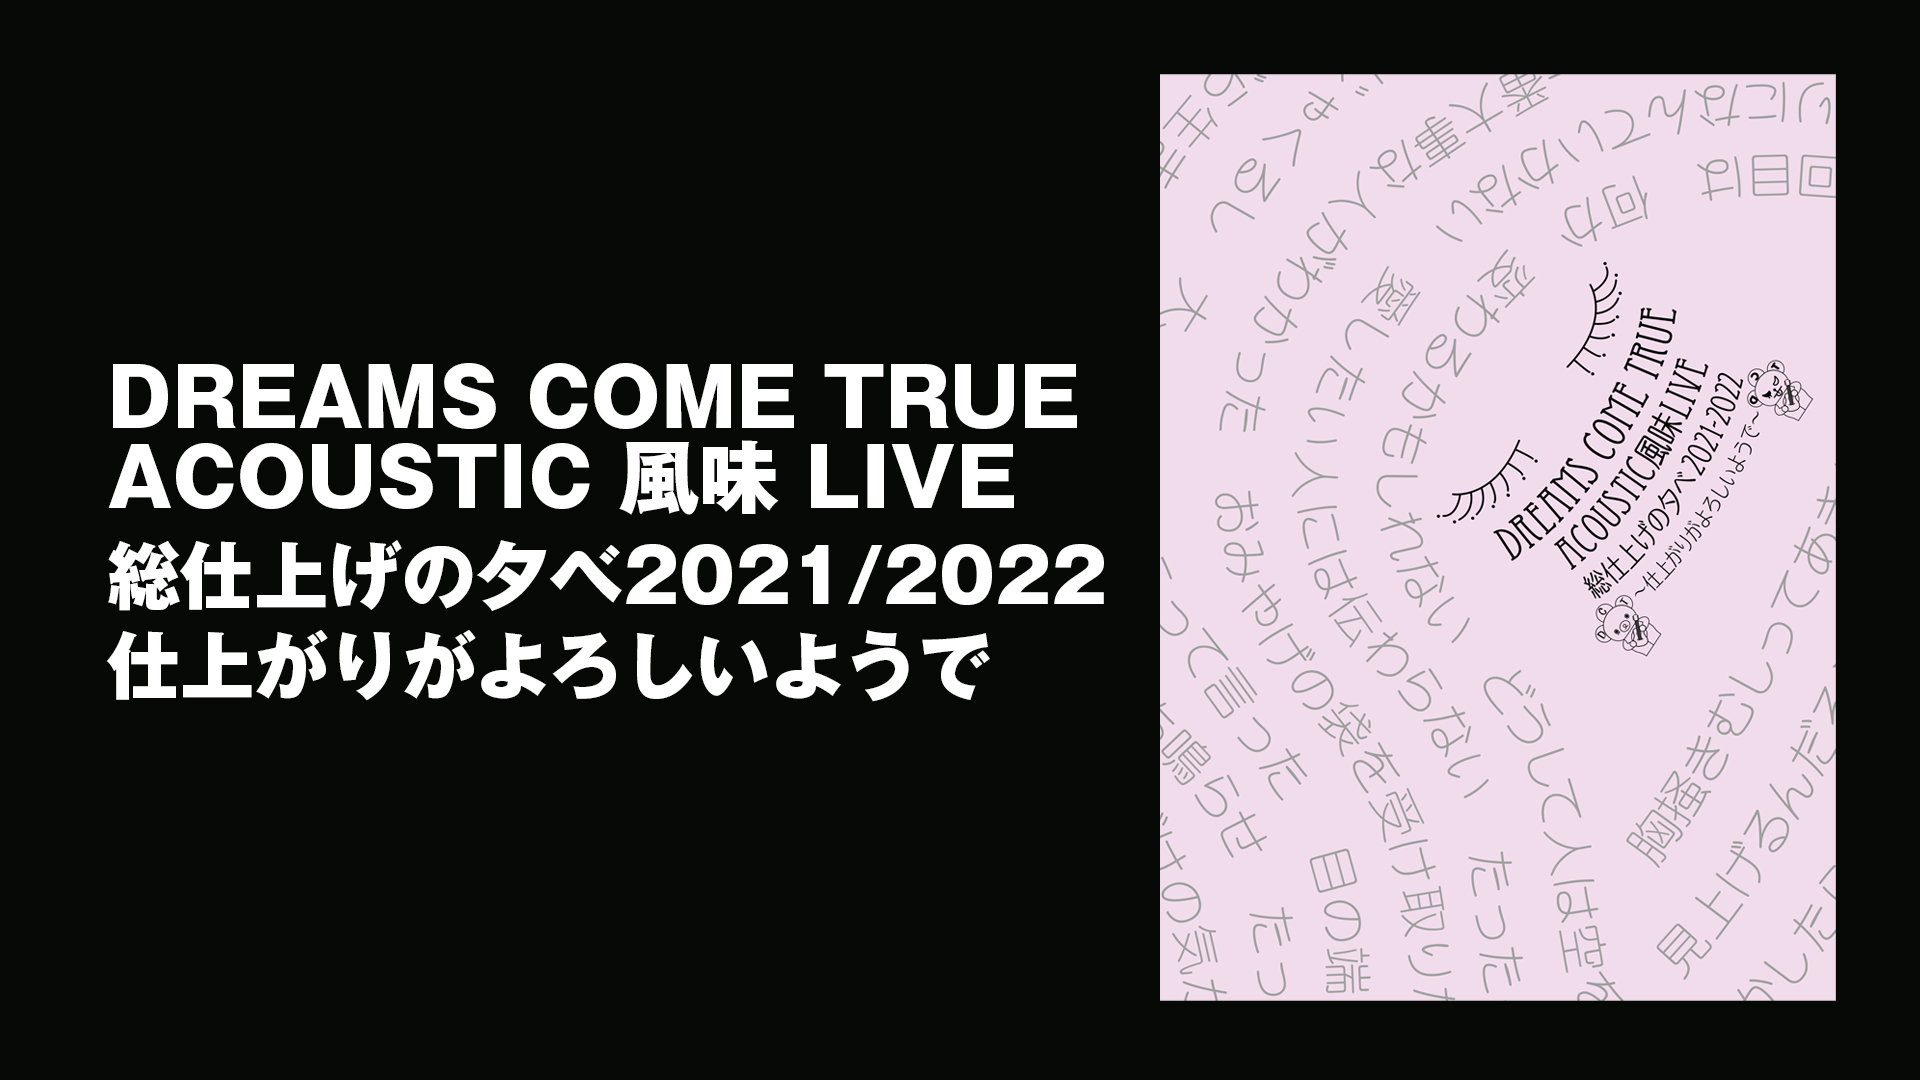 DREAMS COME TRUE ACOUSTIC 風味LIVE 総仕上げの夕べ 2021/2022